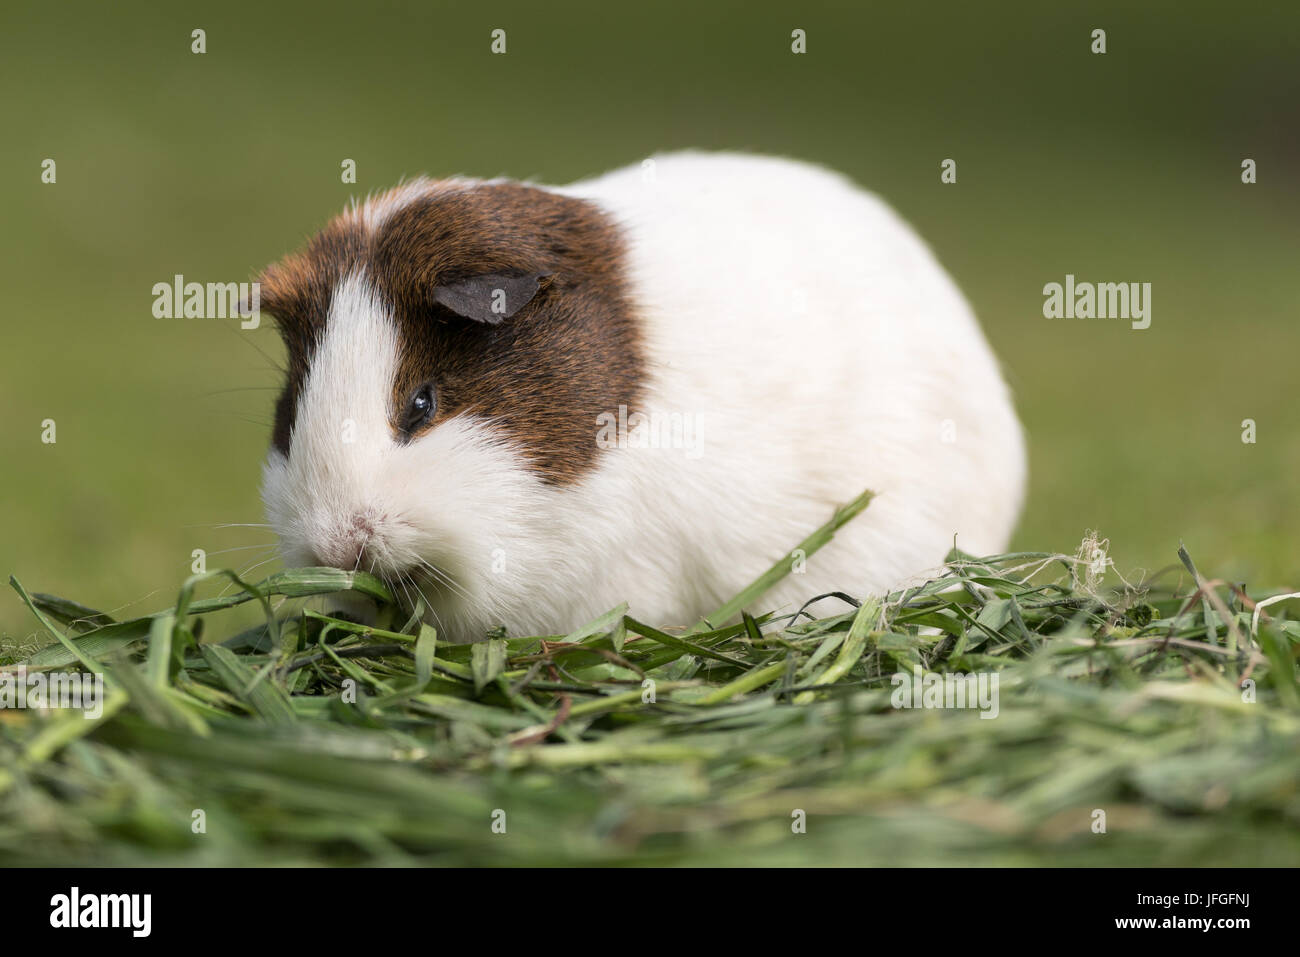 Guinea pig. Stock Photo